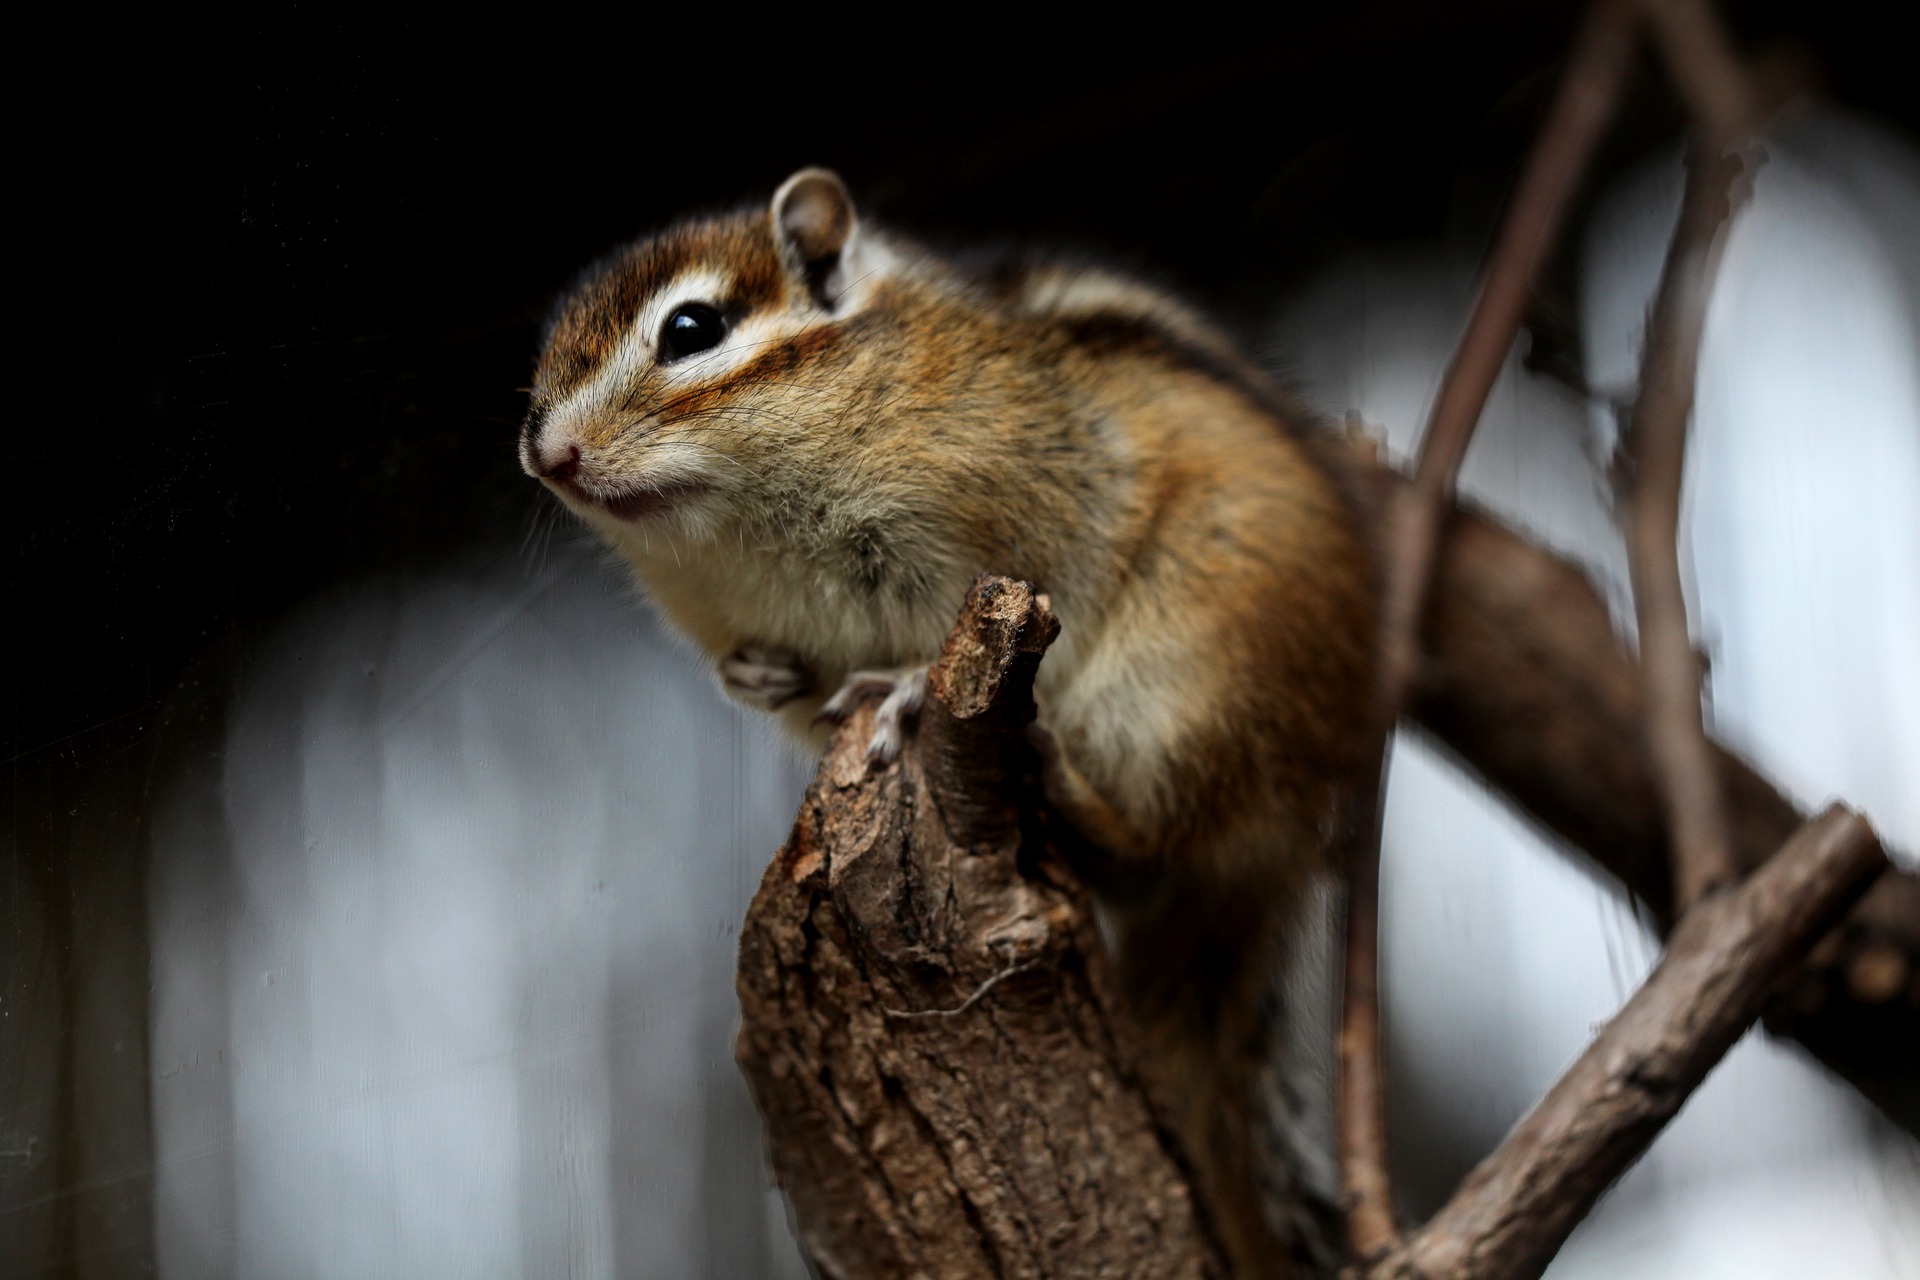 Burunduk, inaczej wiewiórka syberyjska, jest gryzoniem uwielbiającym skakanie i wspinanie się.